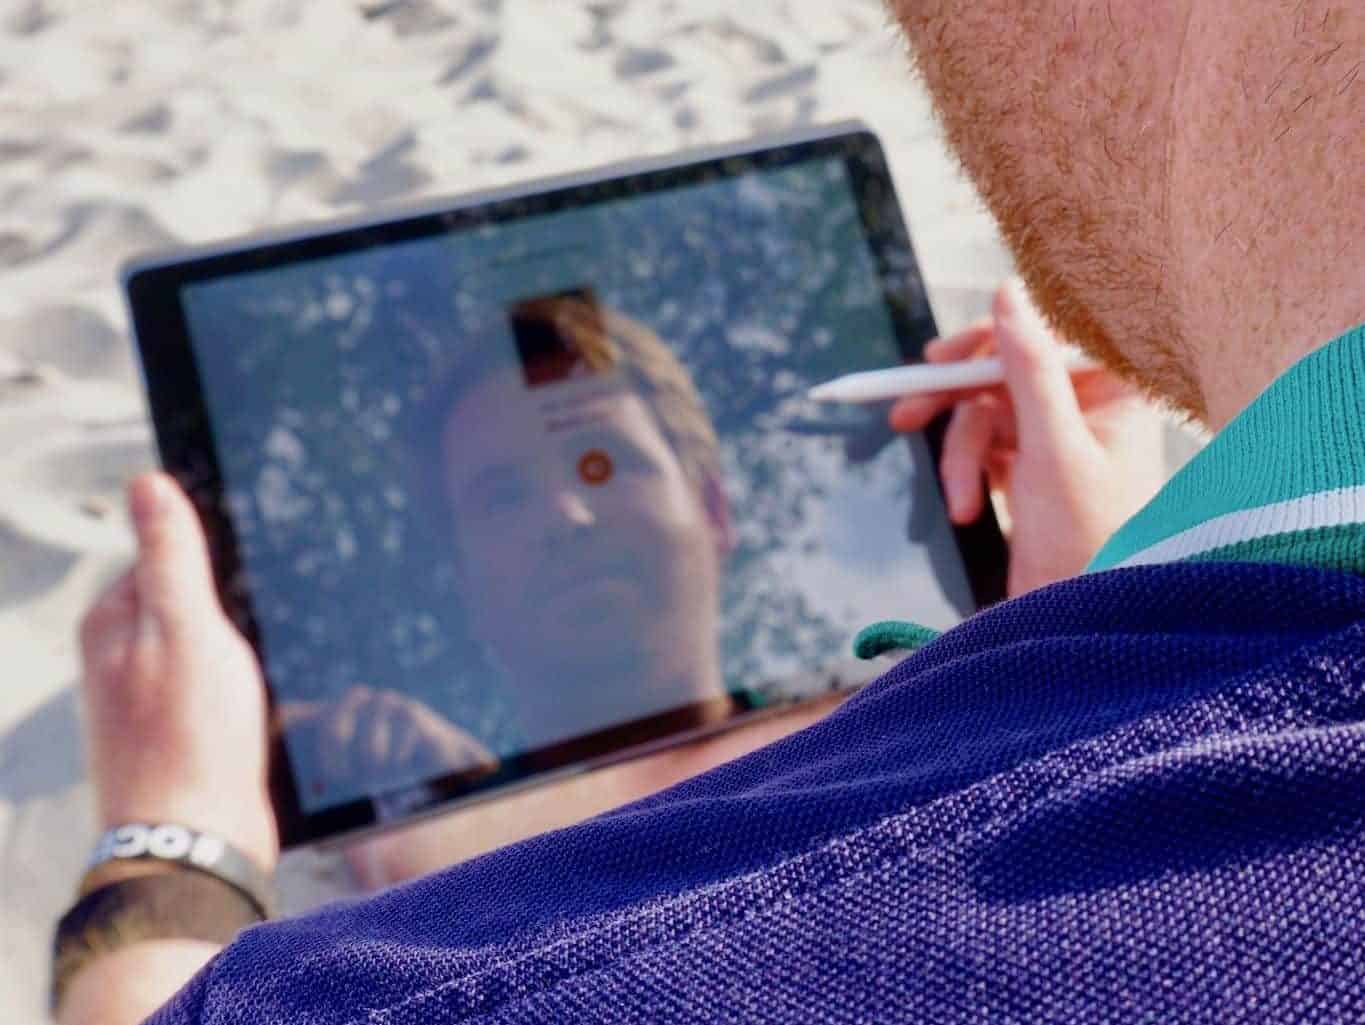 iPad Pro auf Reisen im Test: Wenn einem am Strand die besten Ideen kommen, sollte man mit dem Aufschreiben nicht lange warten. Foto: Luisa Praetorius